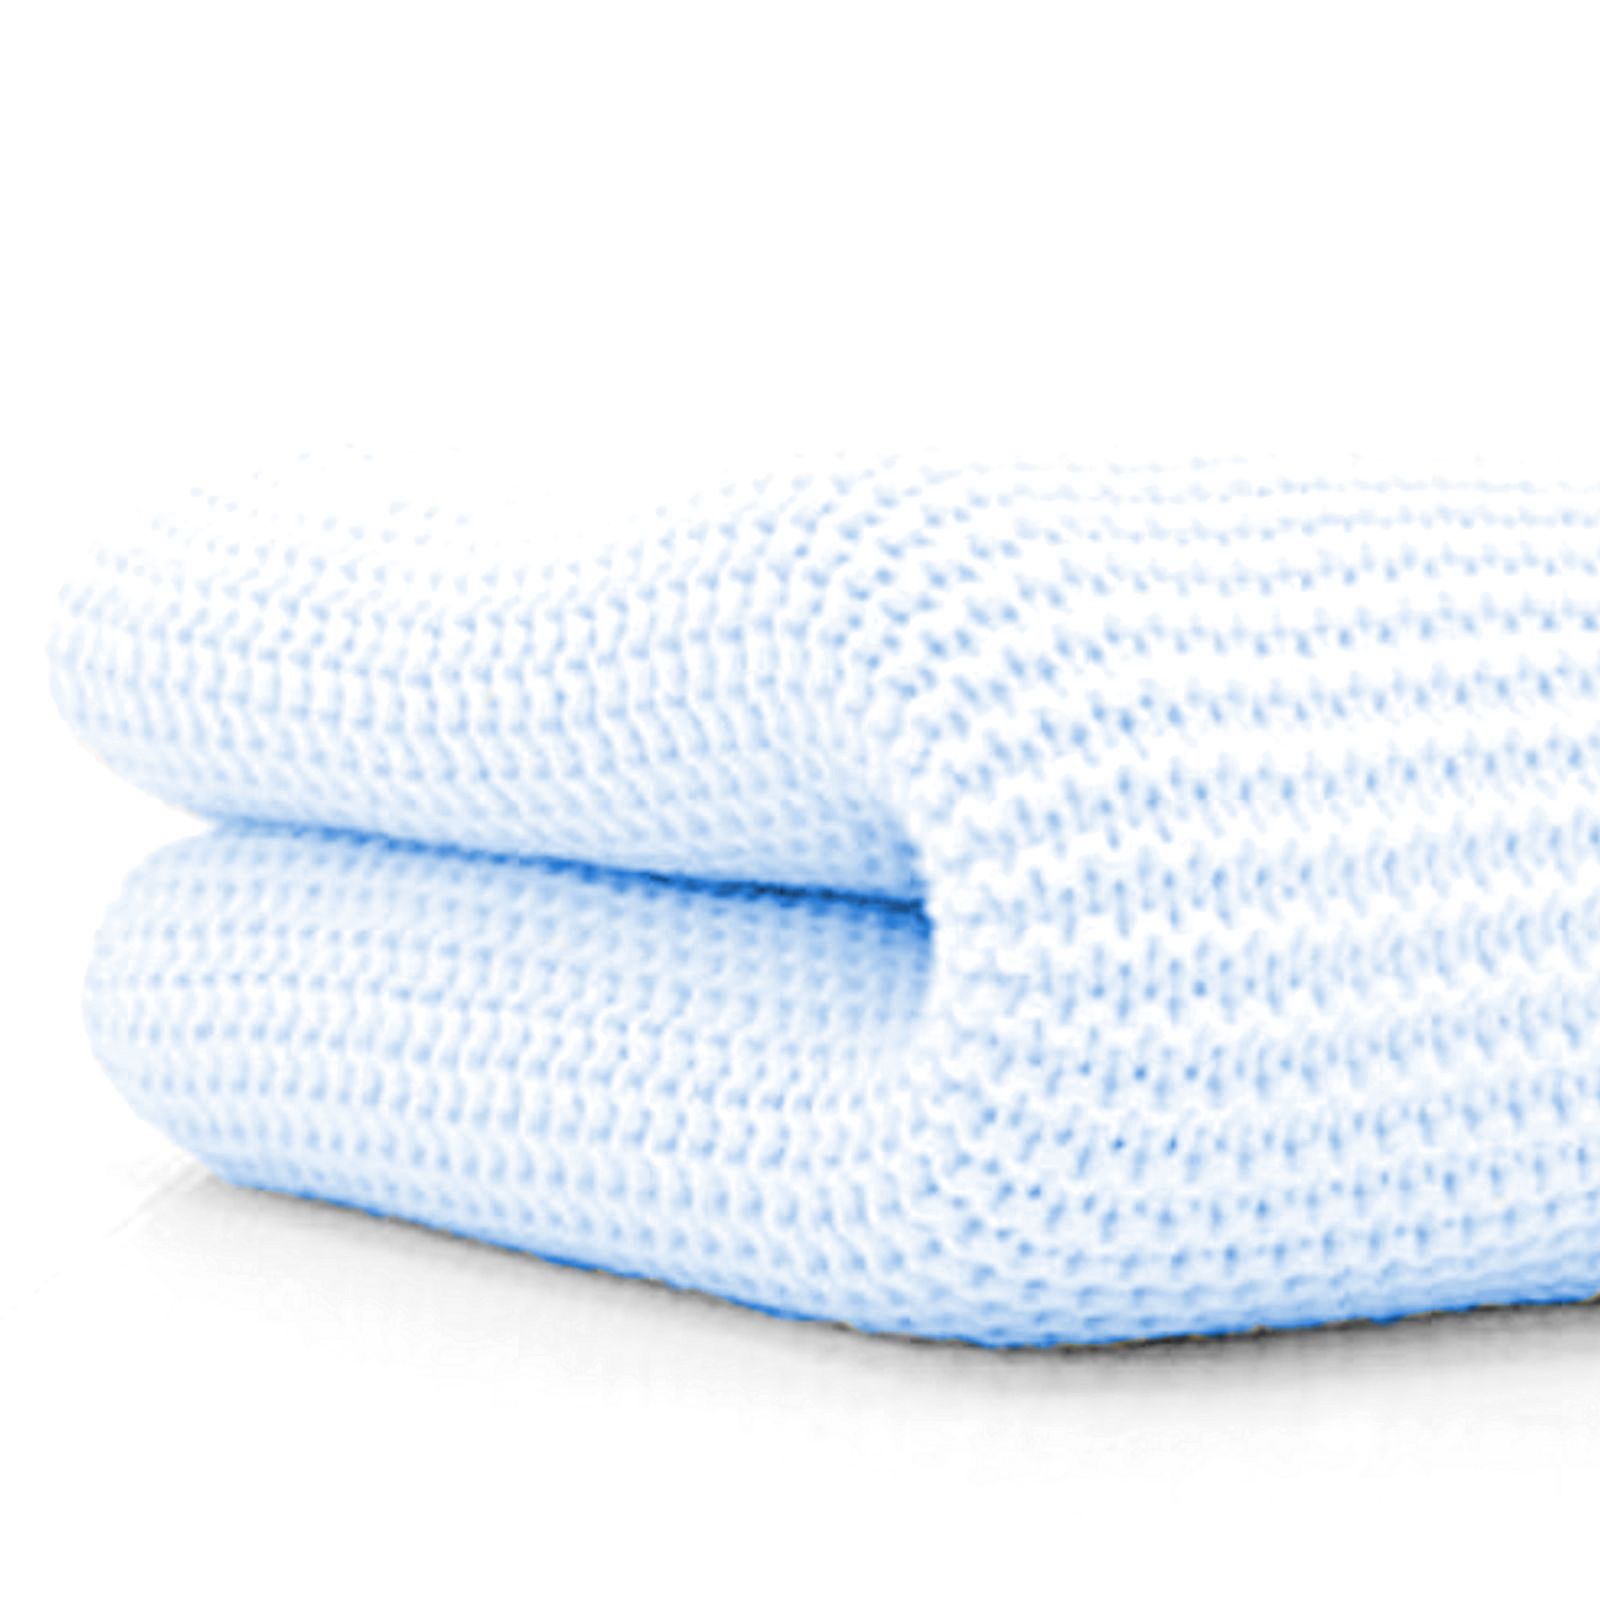 4baby Soft Cotton Cellular Pram / Moses Basket Blanket - Blue